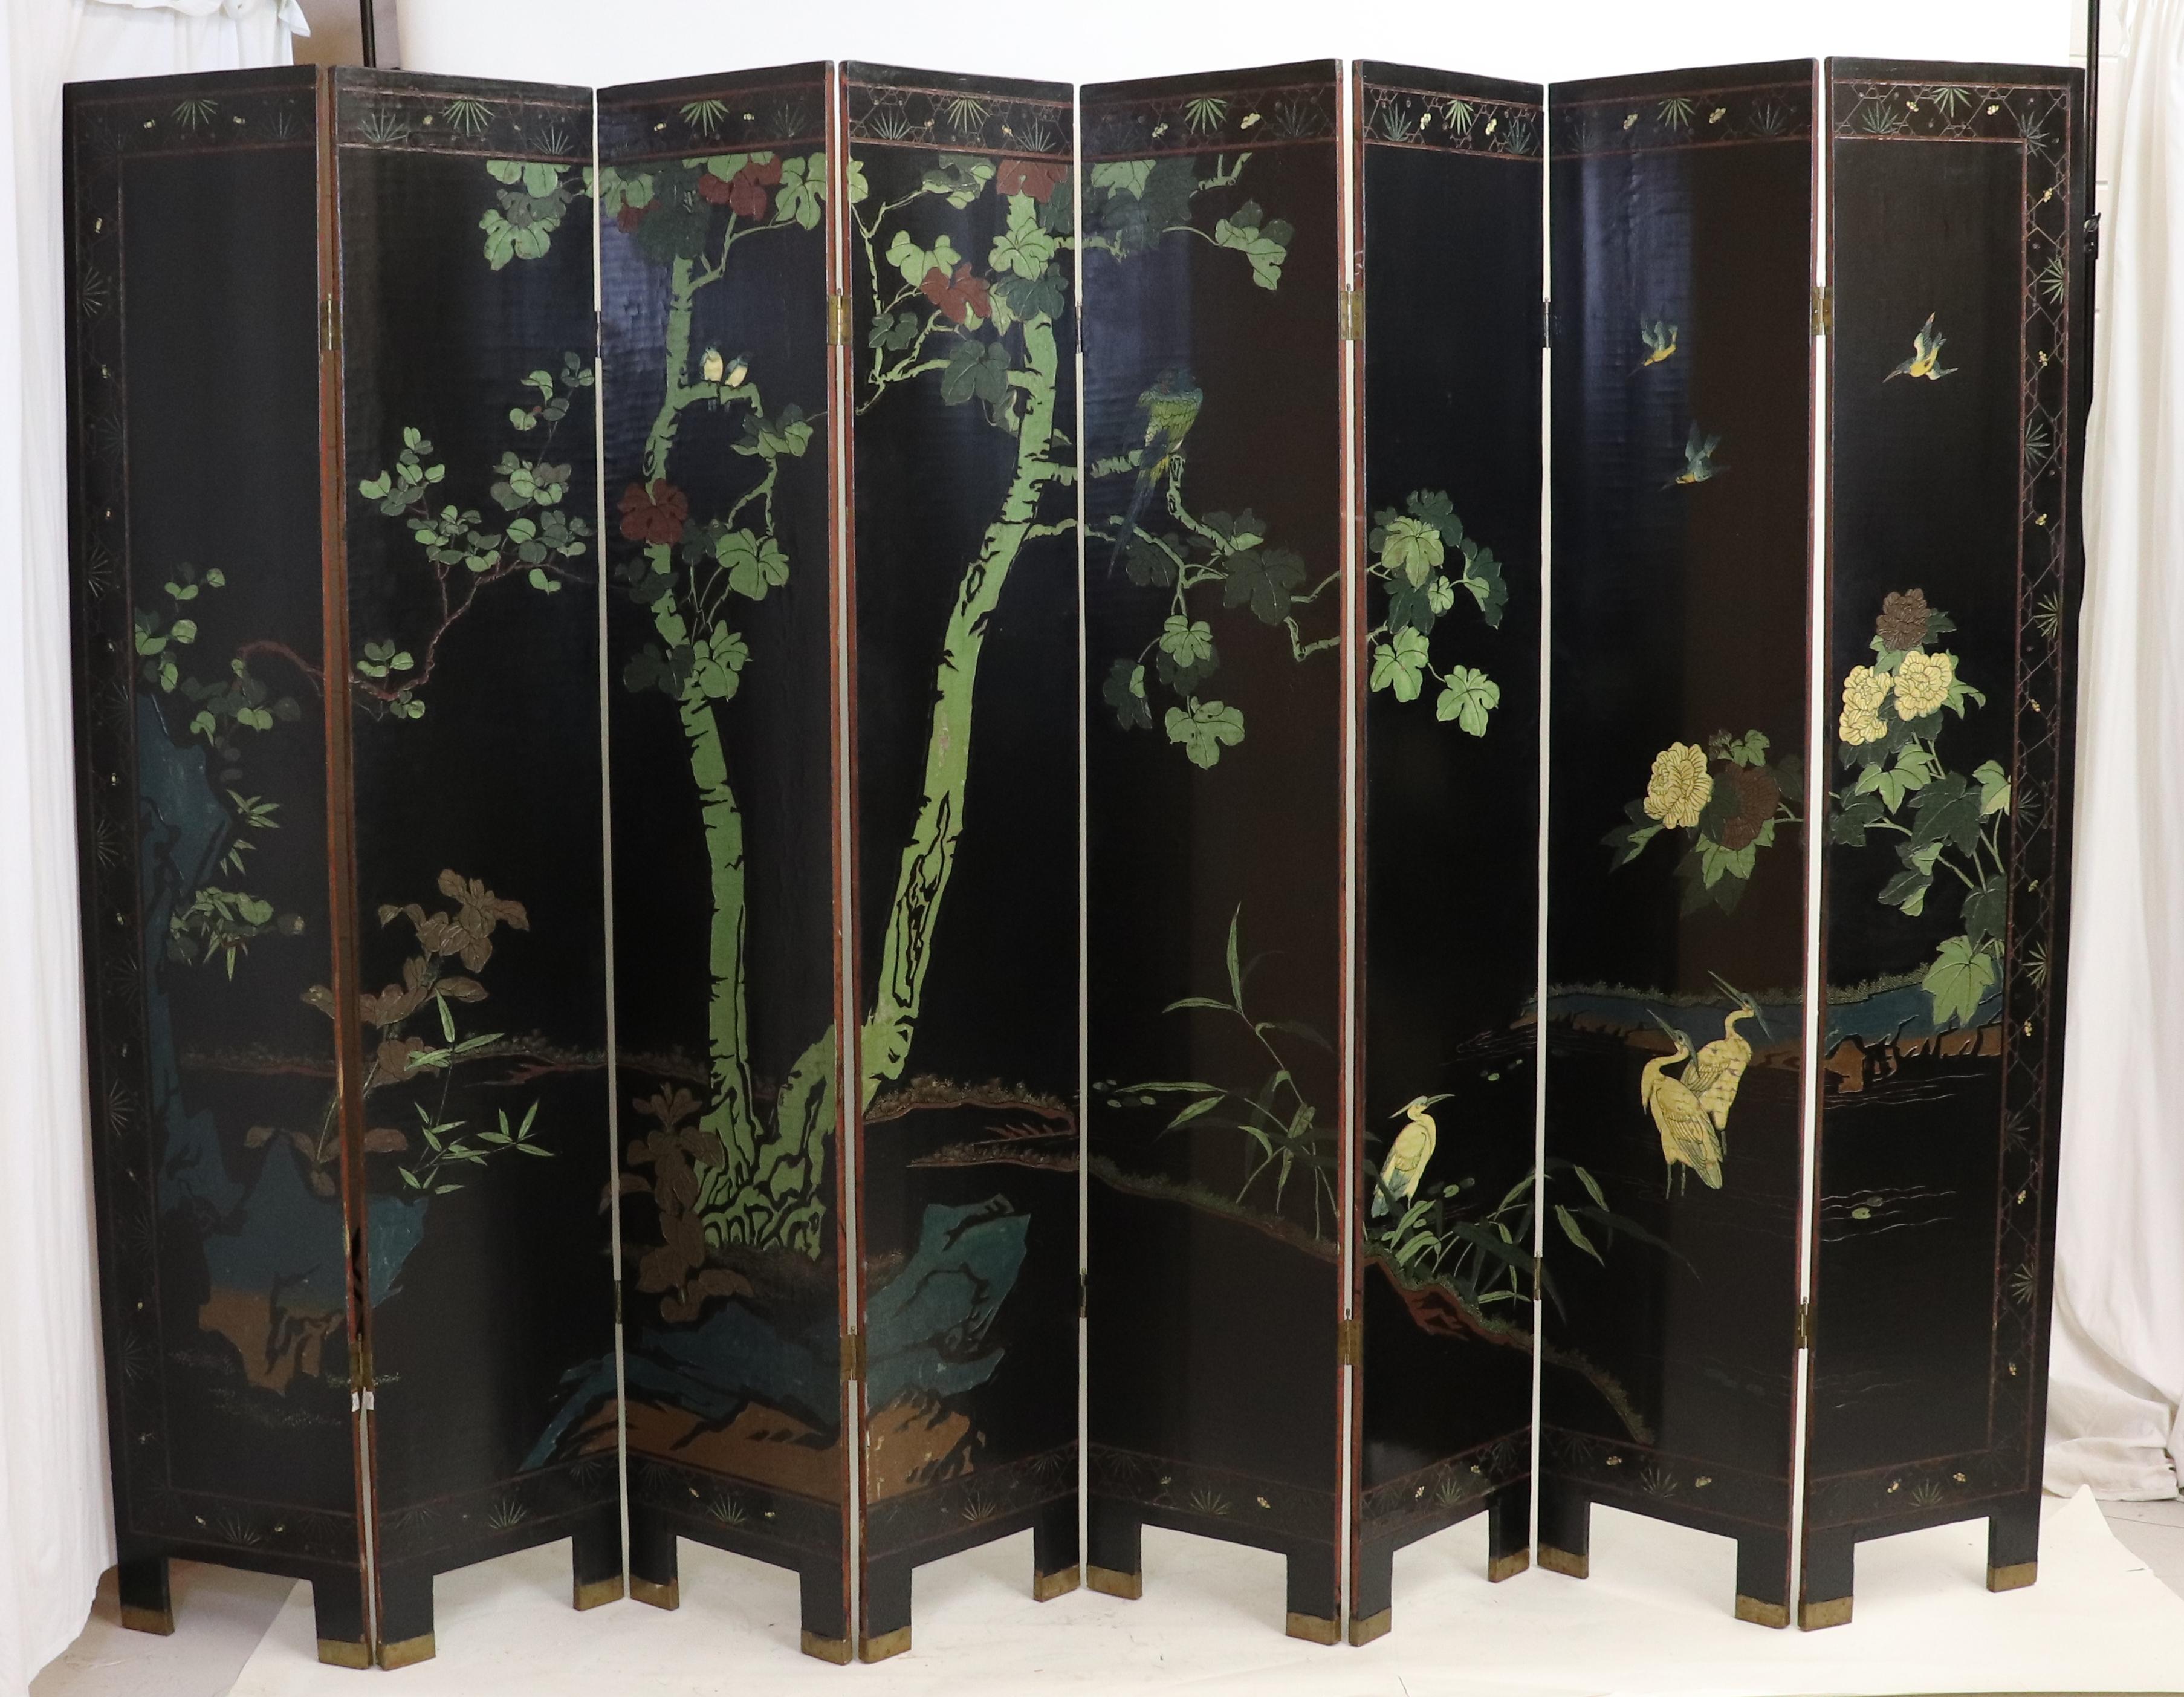 Ce paravent double face à huit panneaux en laque noire d'exportation Coromandel représente un paysage naturel avec des oiseaux, des arbres et des chrysanthèmes. Dans la technique de la laque de Coromandel, une couche de quelques millimètres